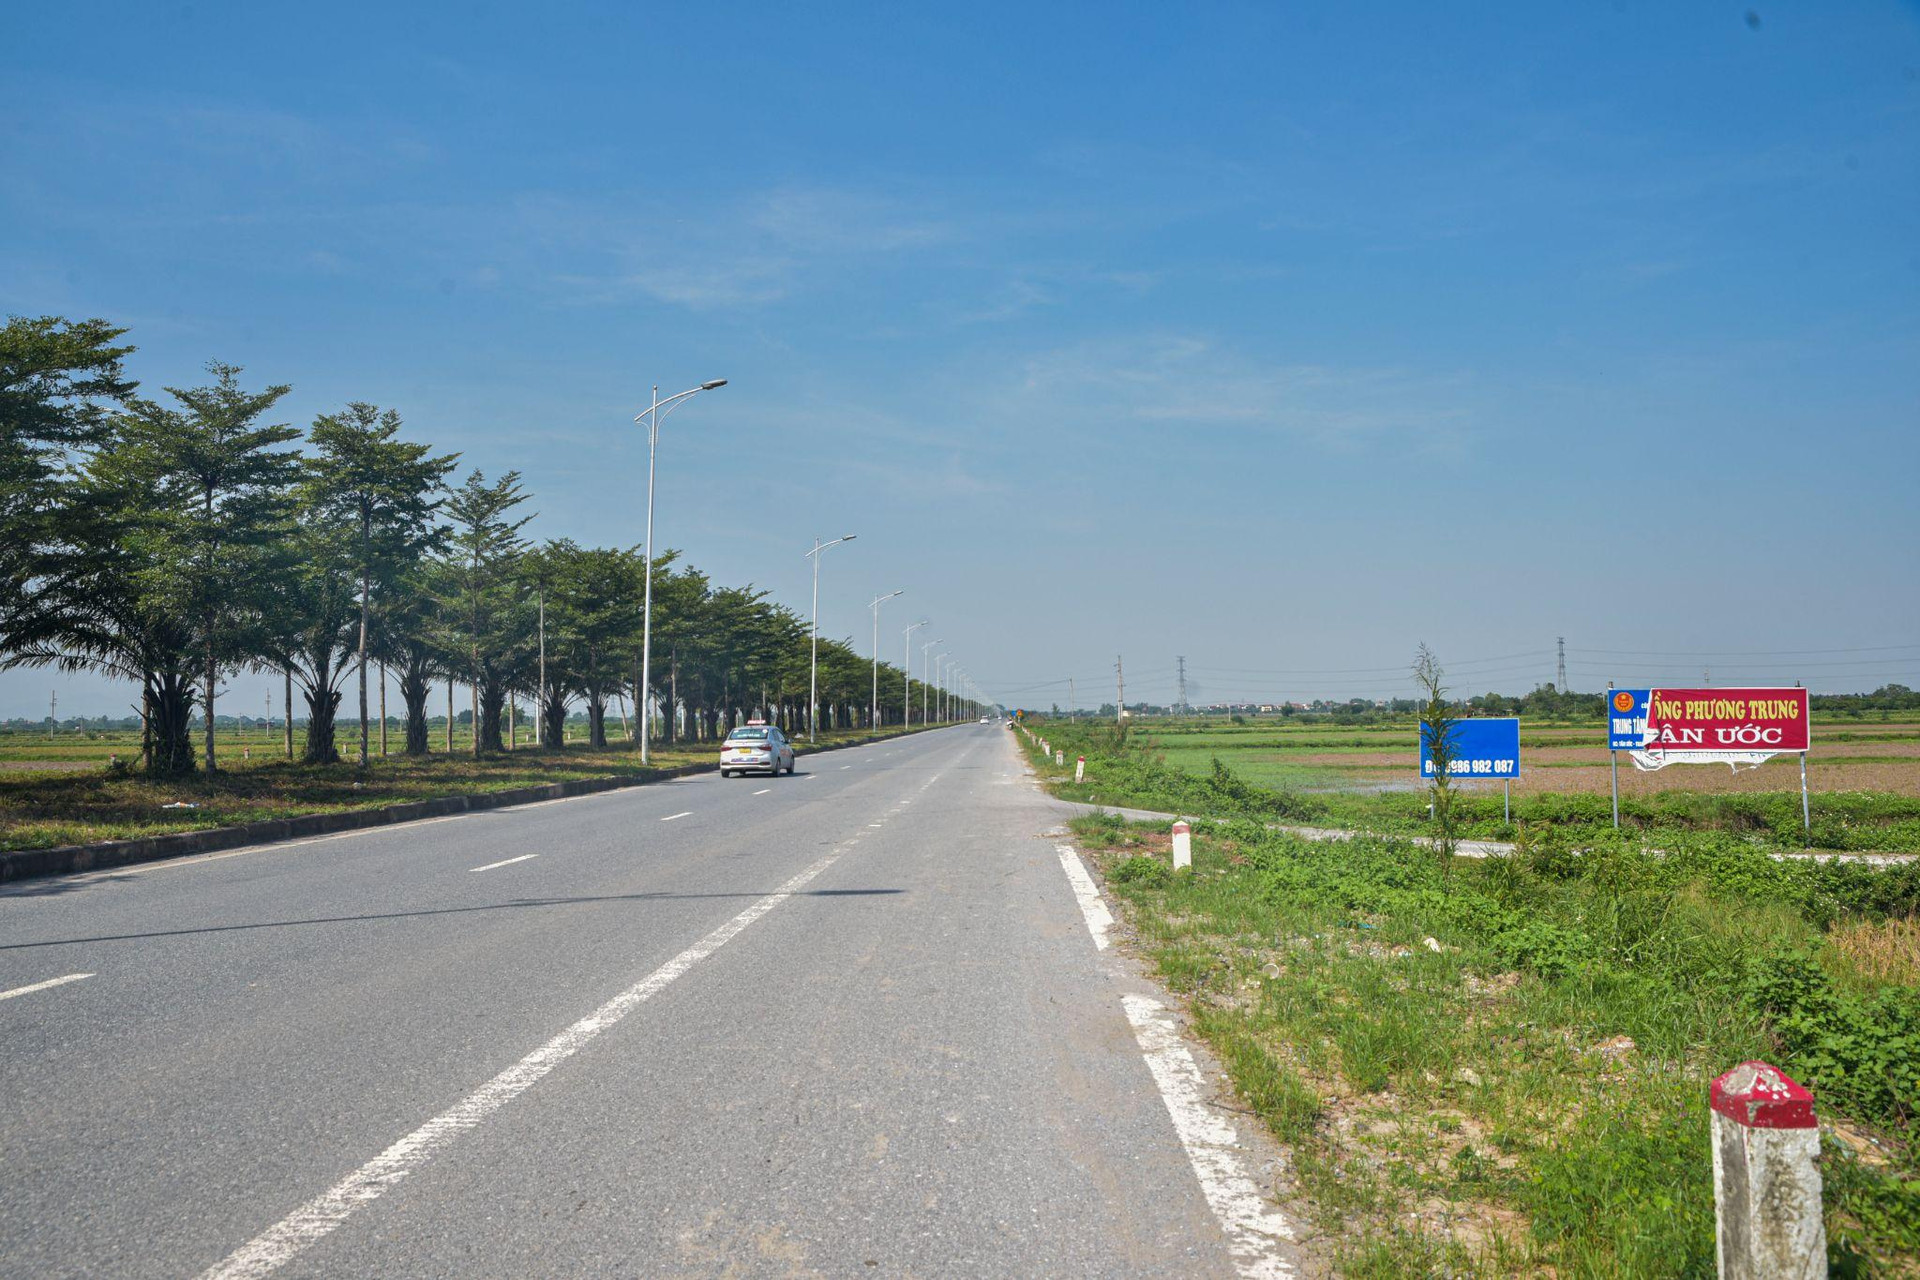 ‏Toàn cảnh khu vực được đề xuất xây dựng sân bay thứ 2 tại Hà Nội - Ảnh 9.